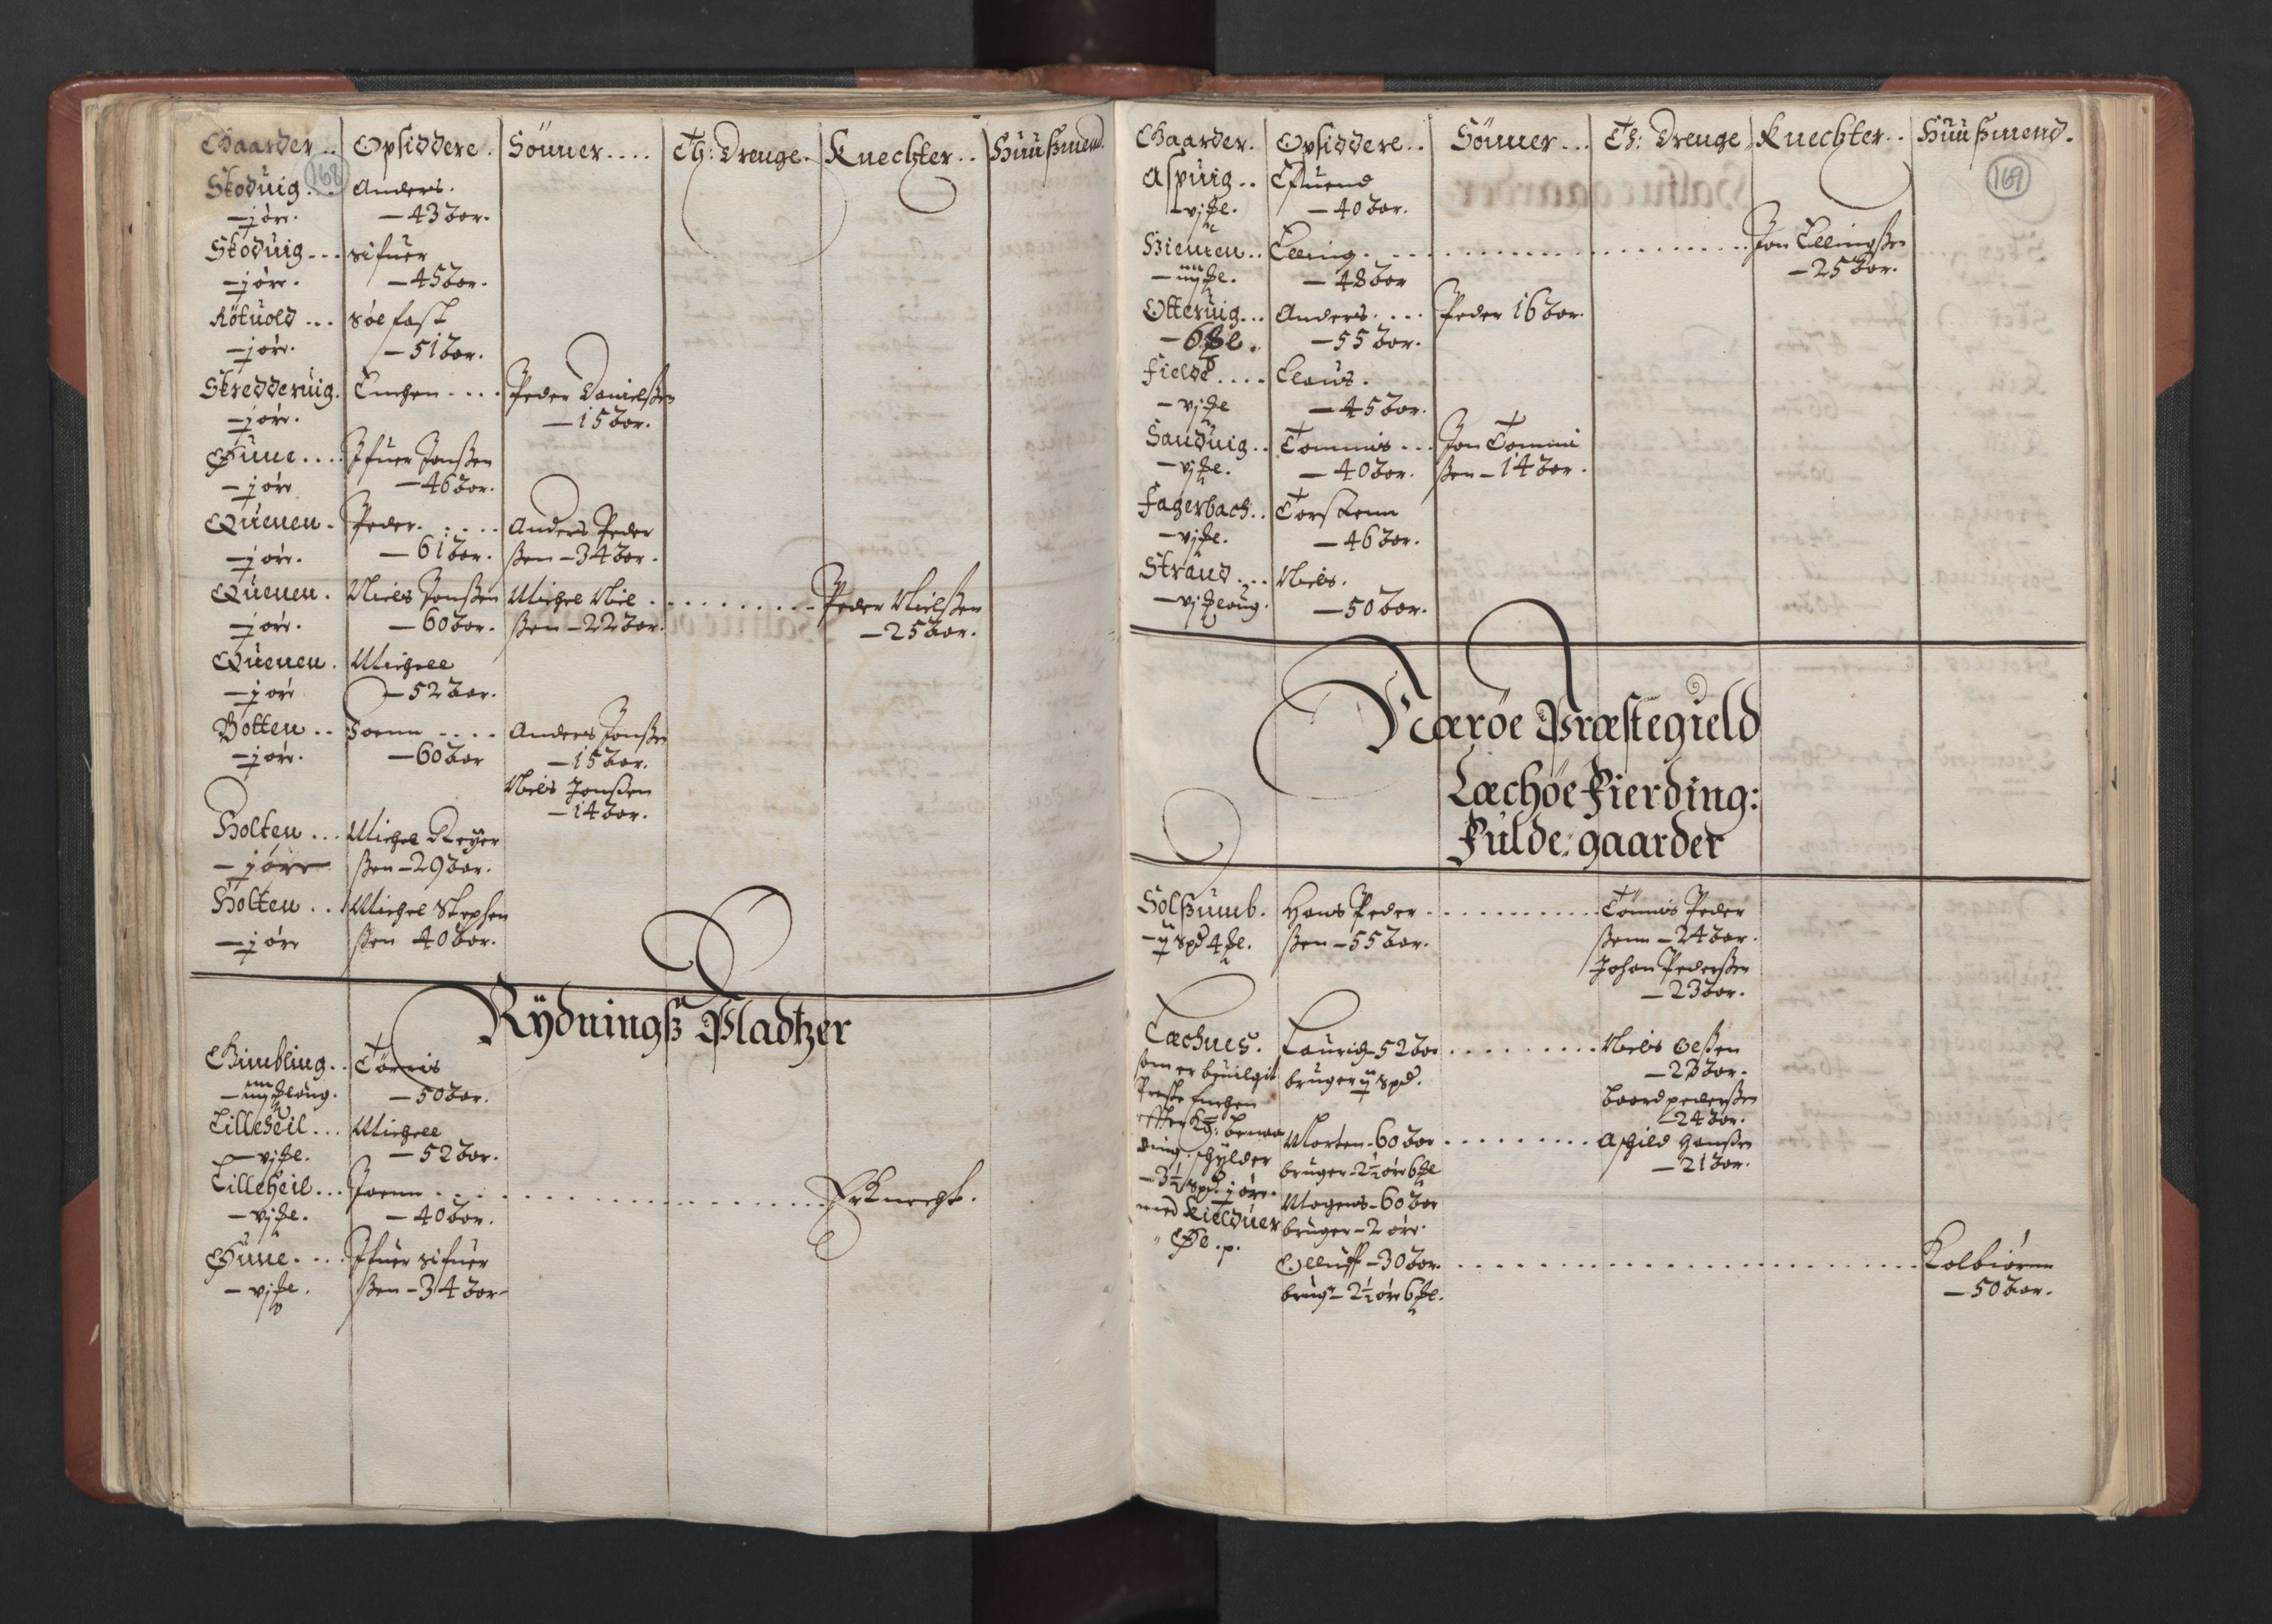 RA, Fogdenes og sorenskrivernes manntall 1664-1666, nr. 19: Fosen fogderi, Inderøy fogderi, Selbu fogderi, Namdal fogderi og Stjørdal fogderi, 1664-1665, s. 168-169